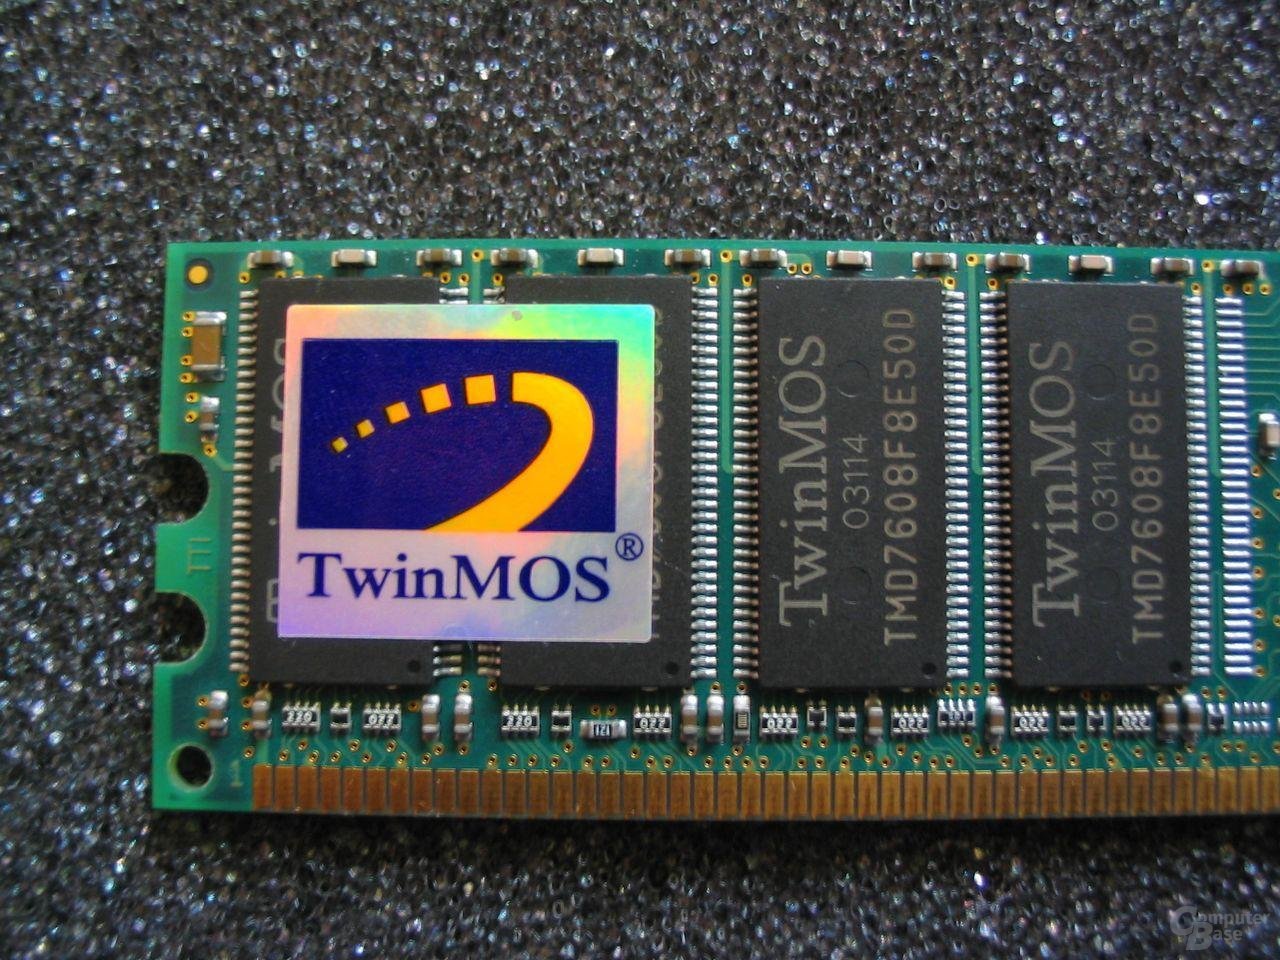 TwinMOS PC3200 (CL 2.5)